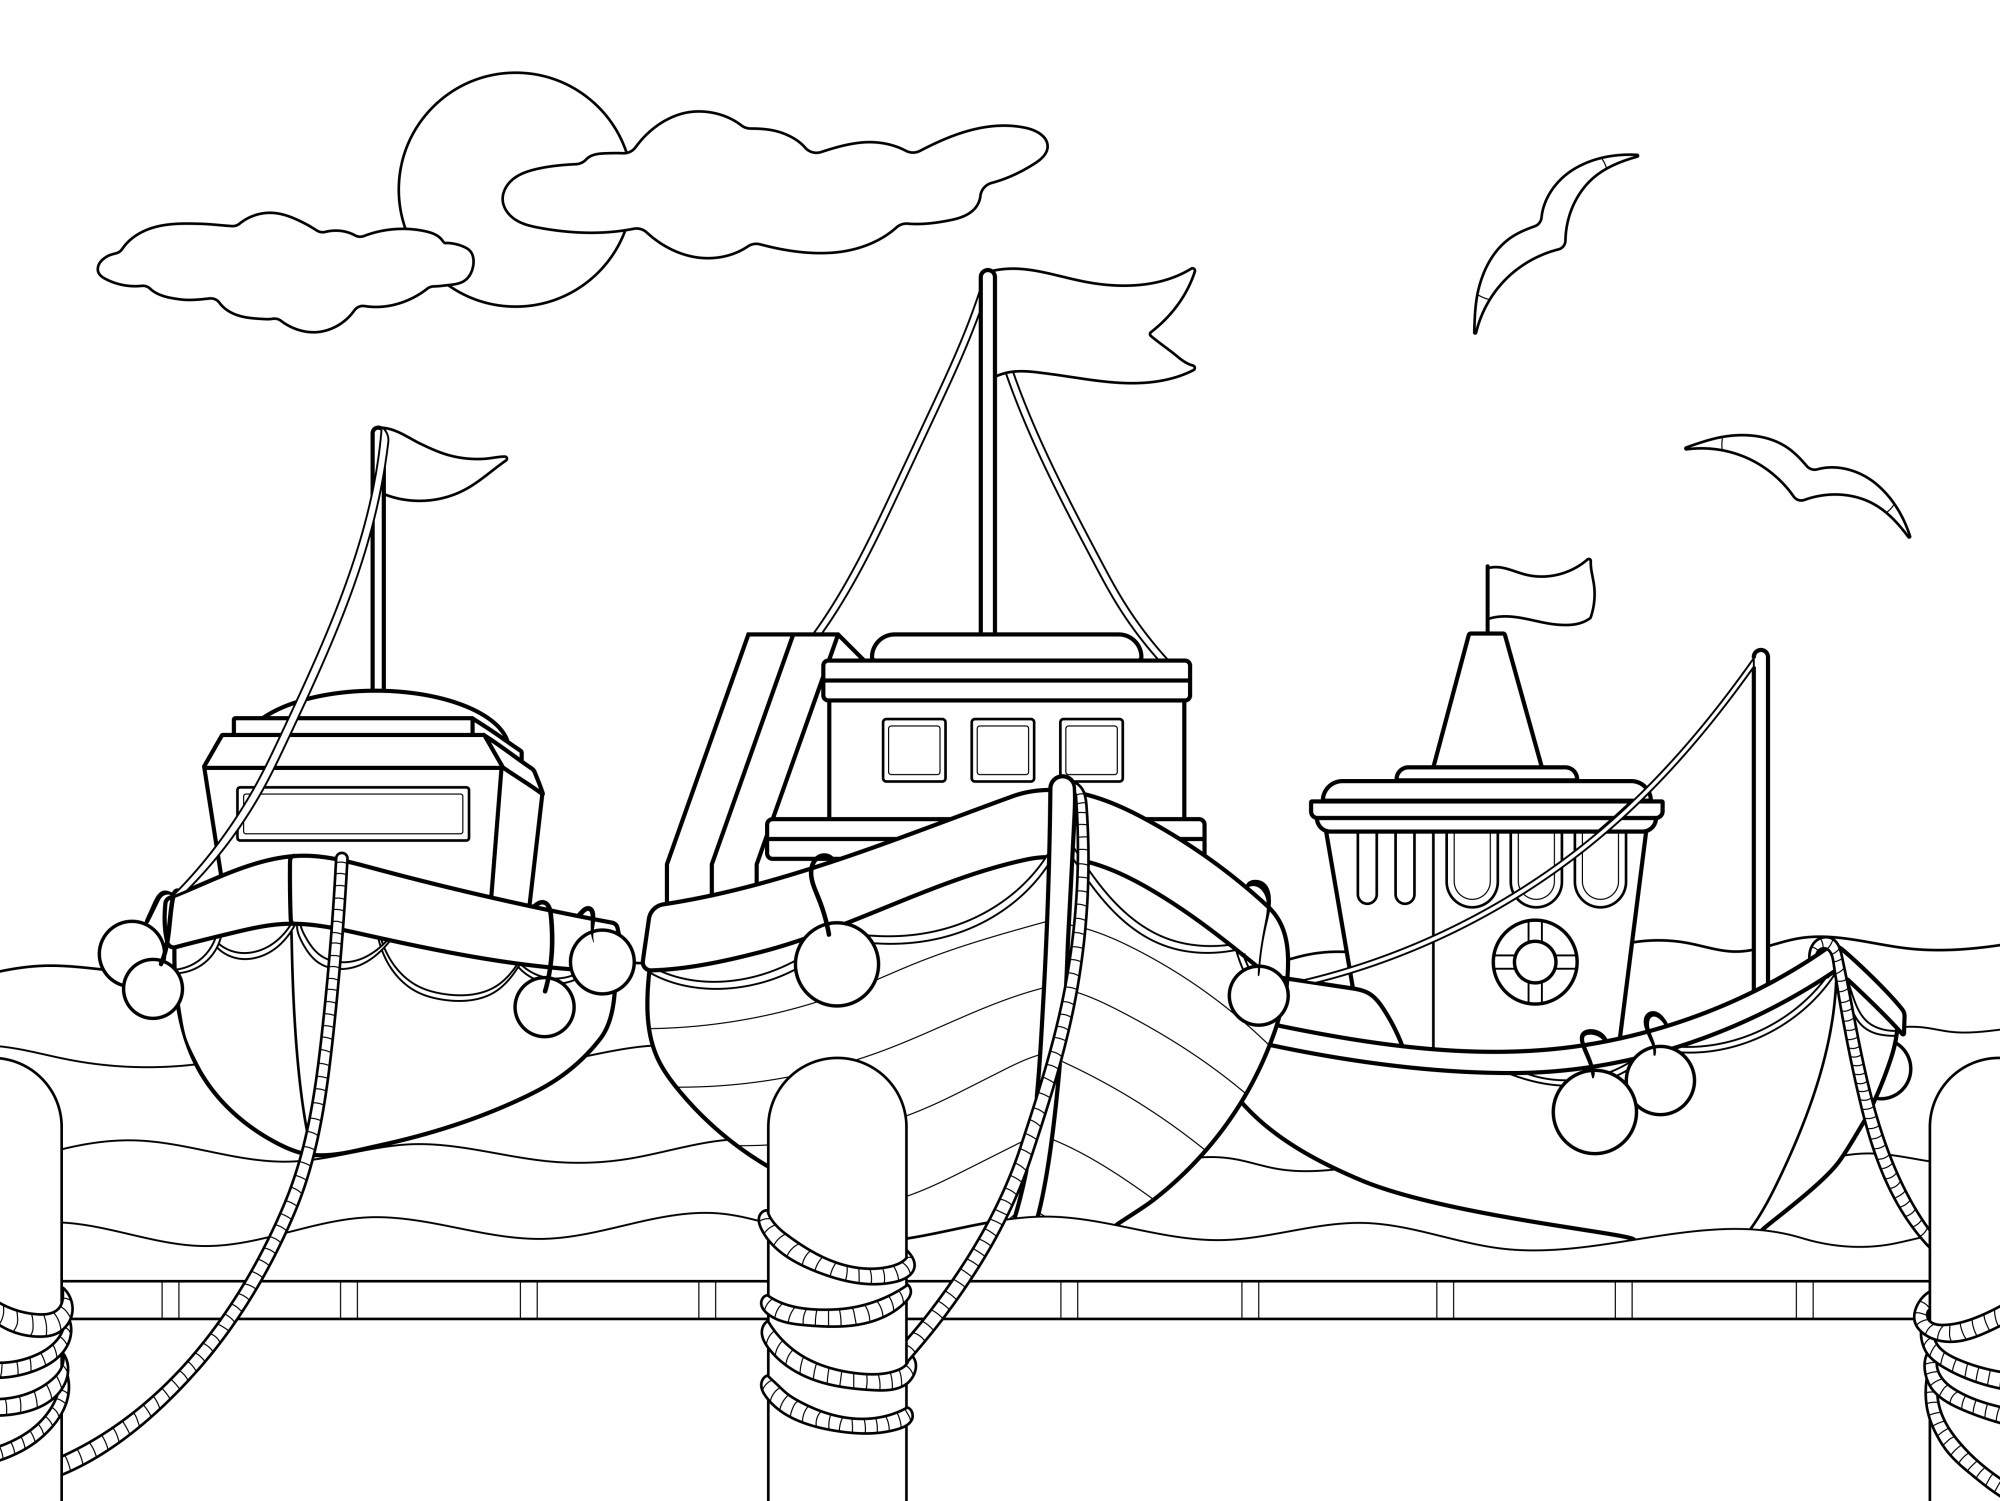 Раскраска для детей: три корабля в пристани